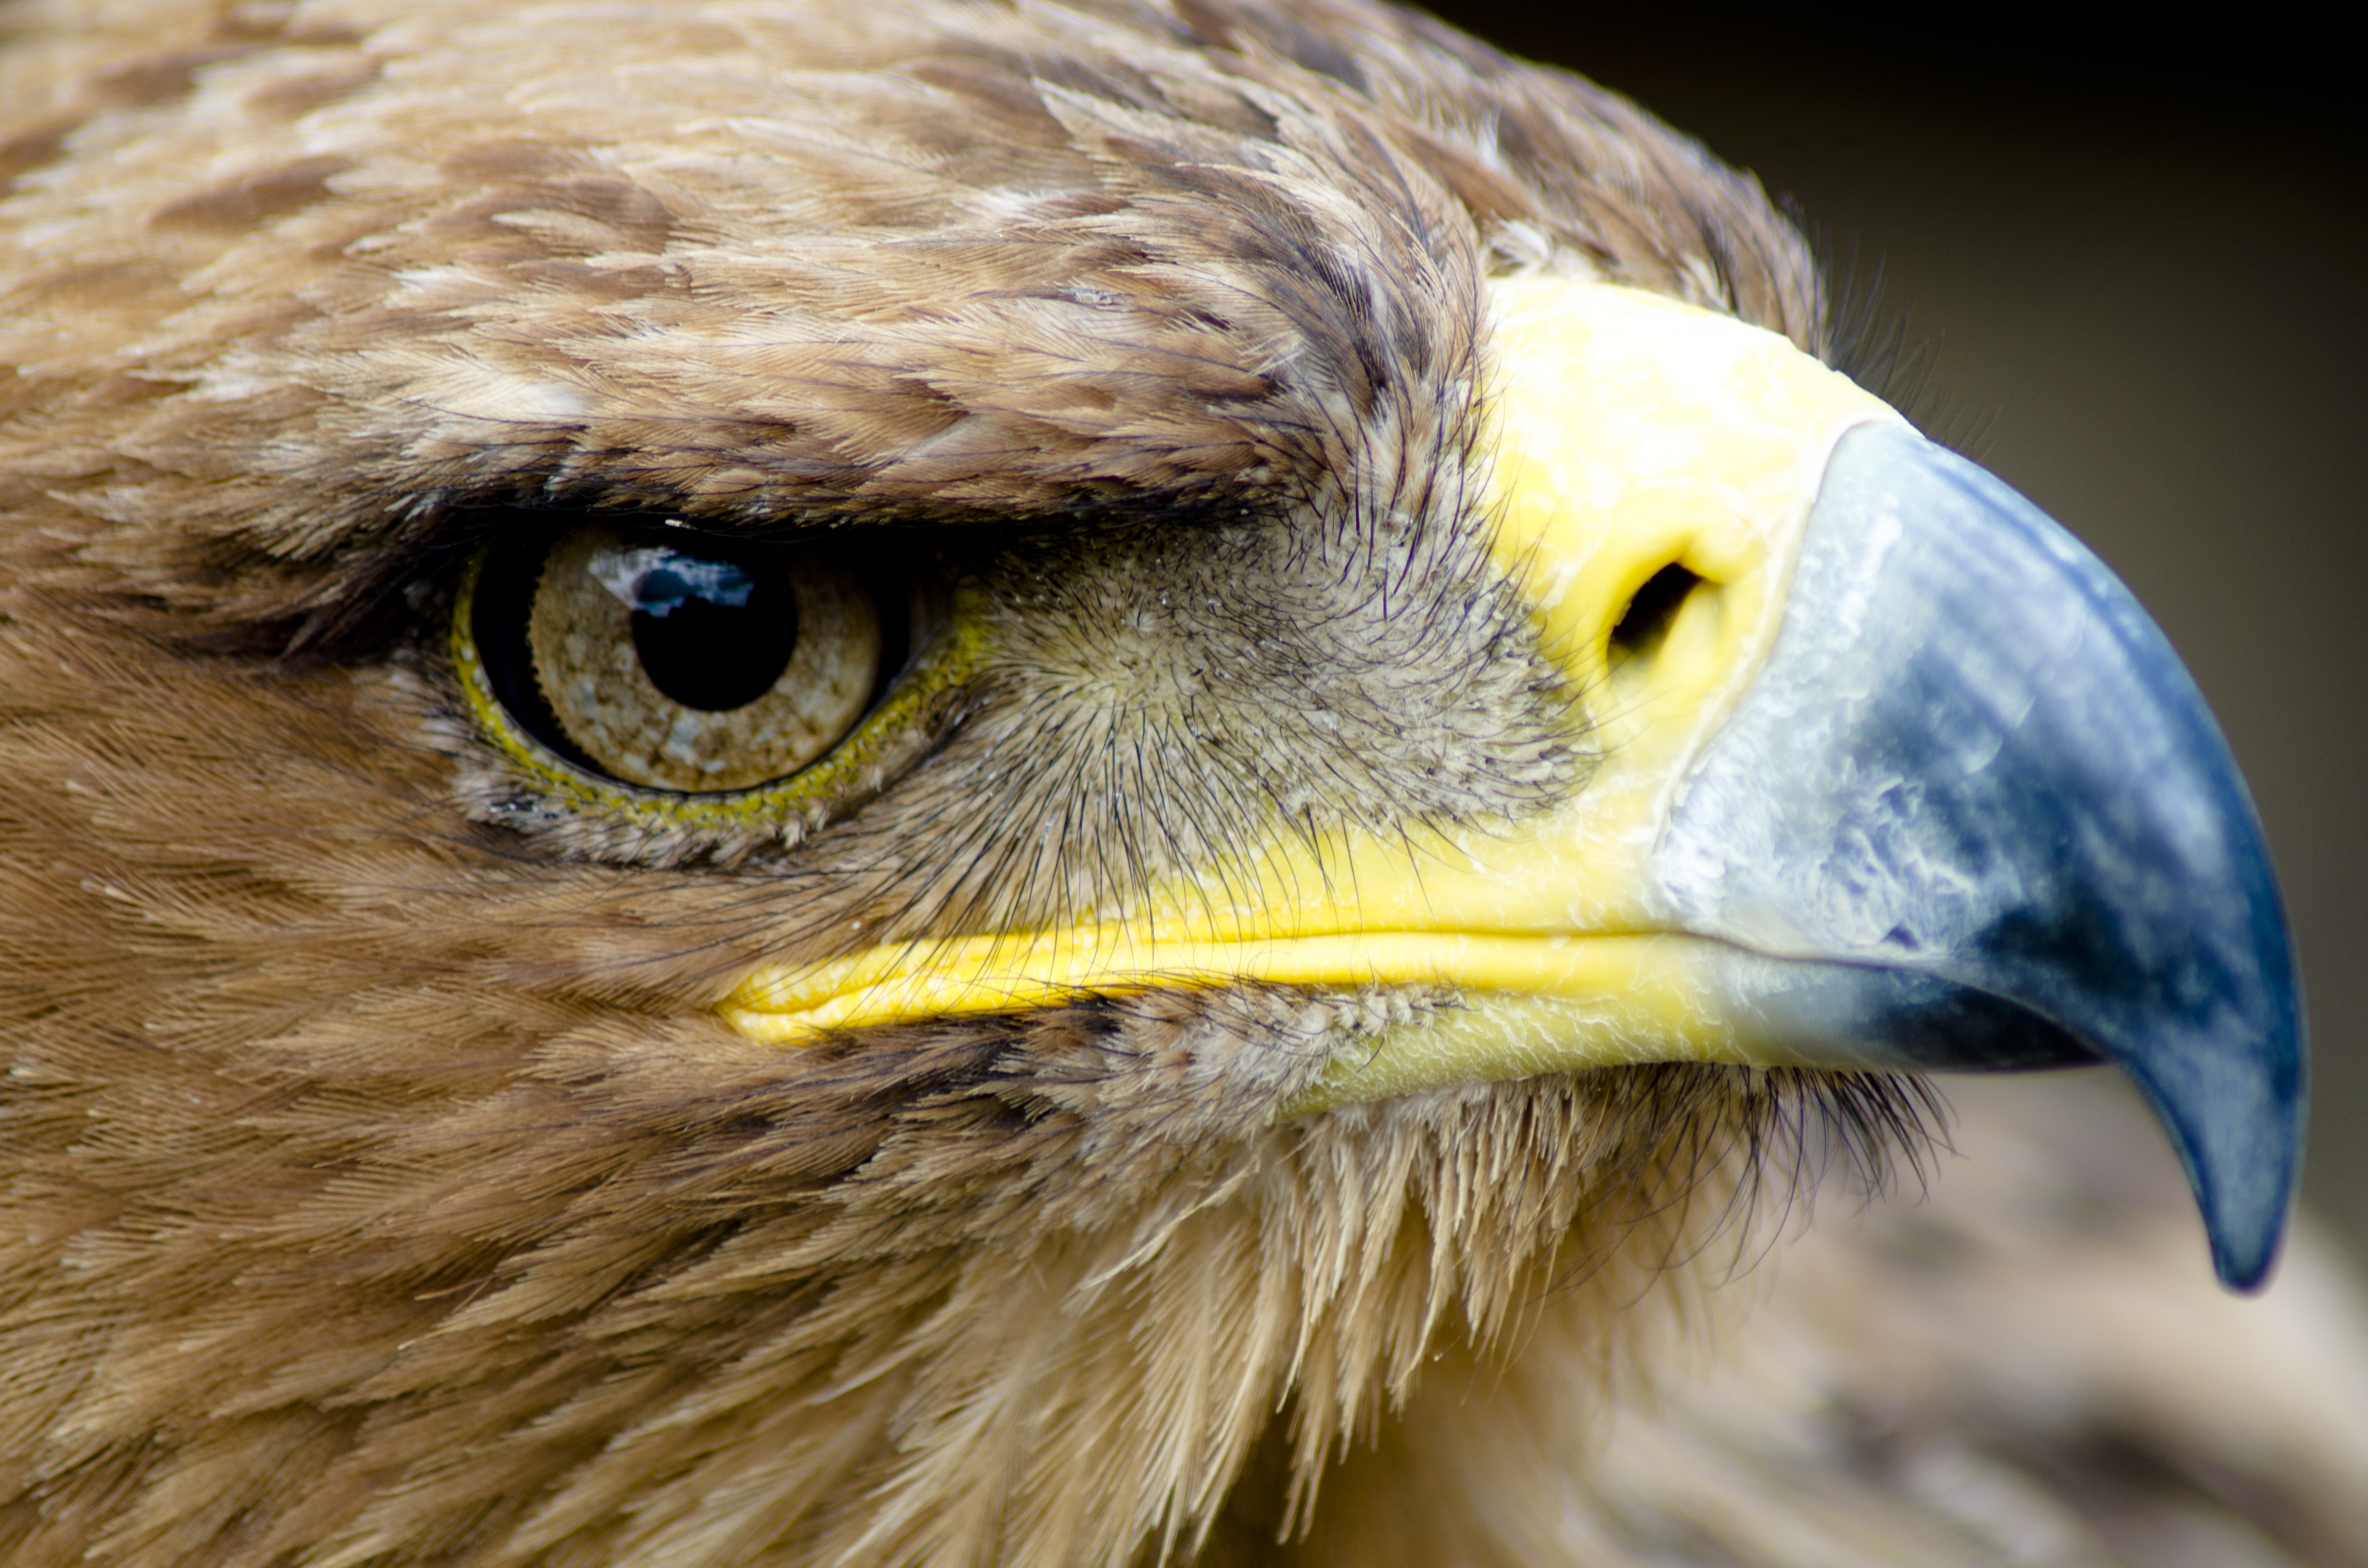 File:Eagle Closeup face.jpg - Wikimedia Commons